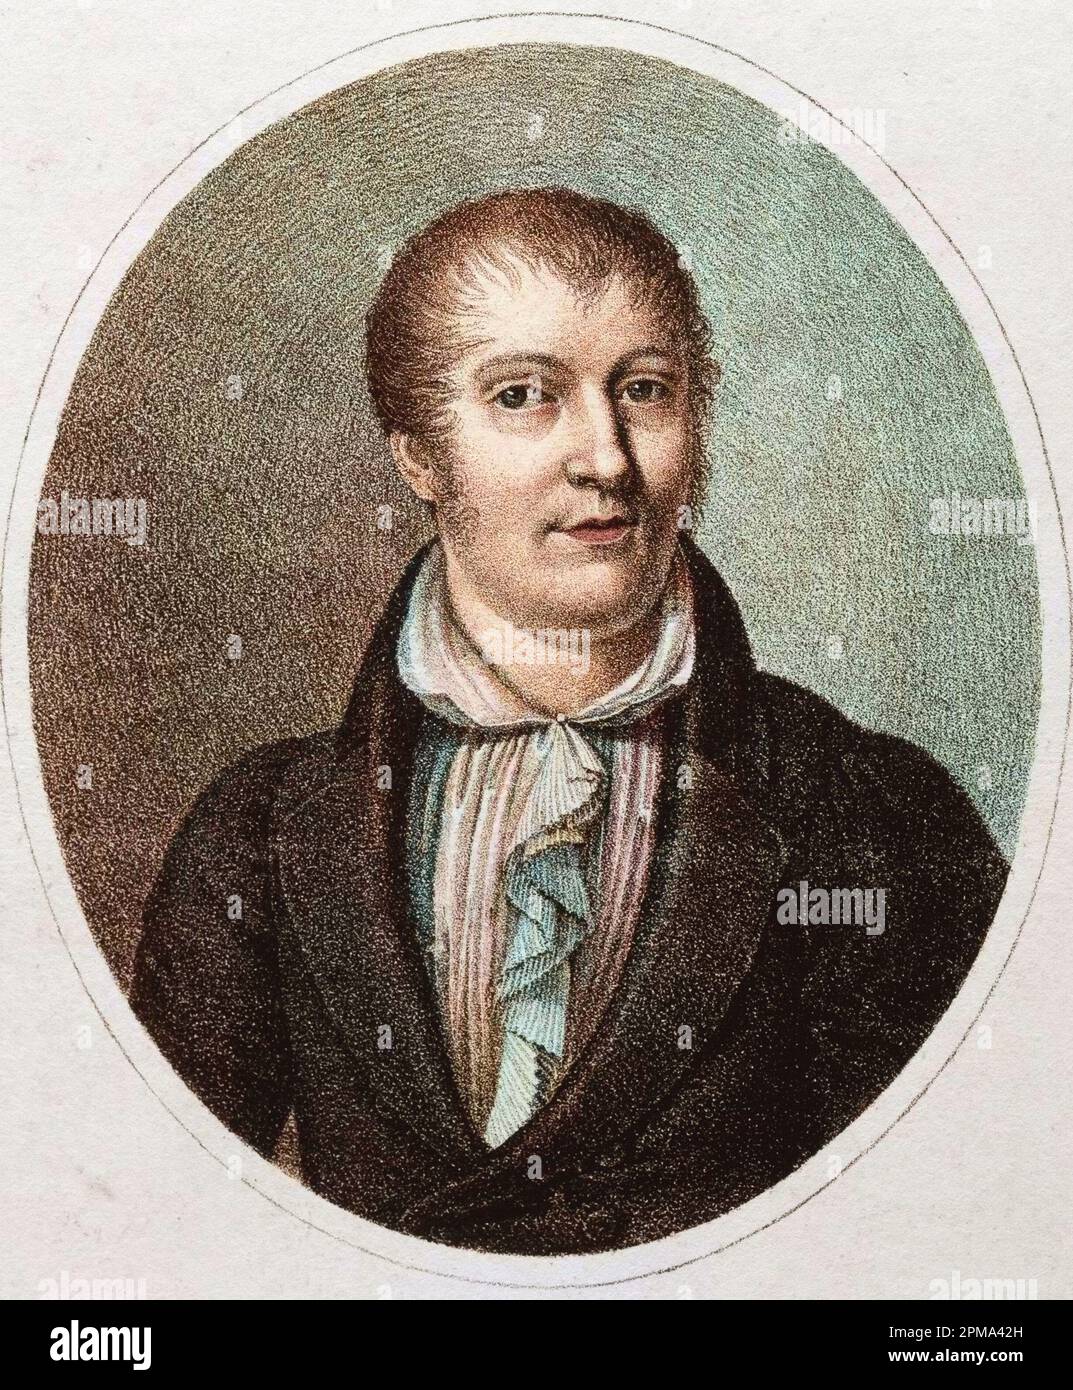 Portrait de Louis Ludwig Spohr (1784 - 1859), compositeur allemand Banque D'Images